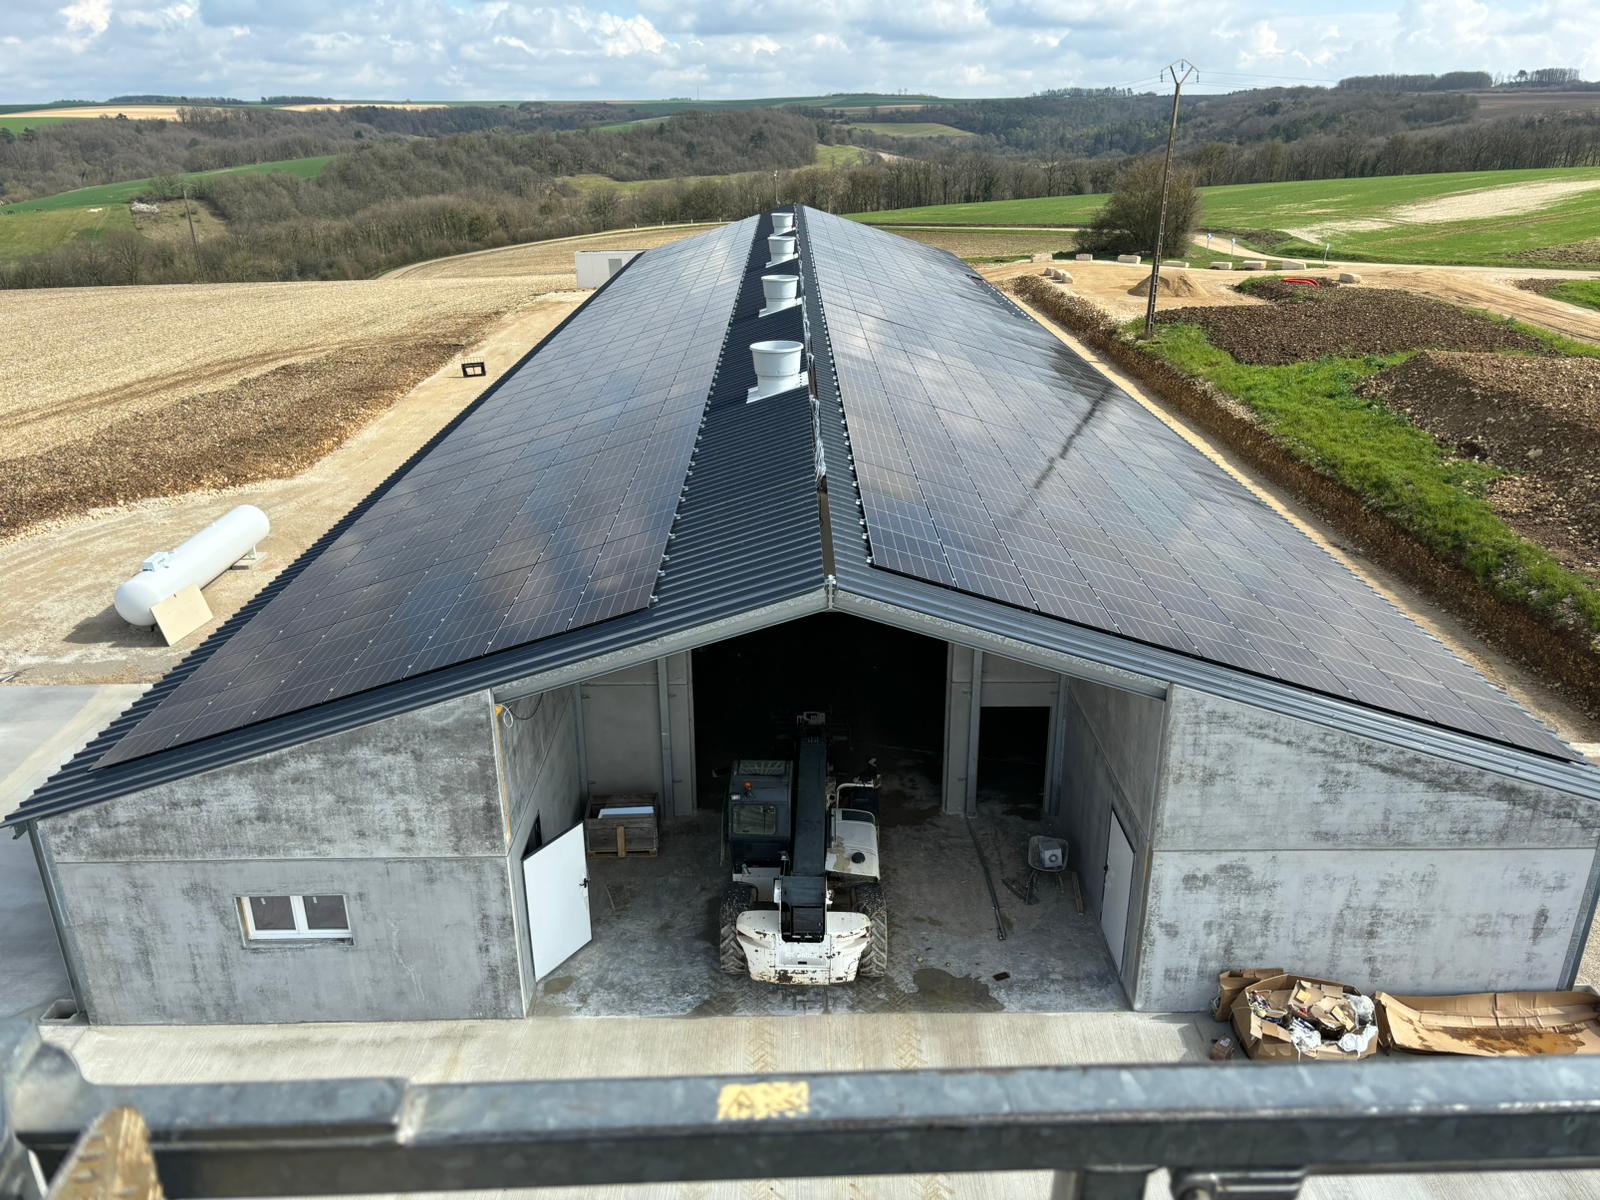 installateur photovoltaique agricole